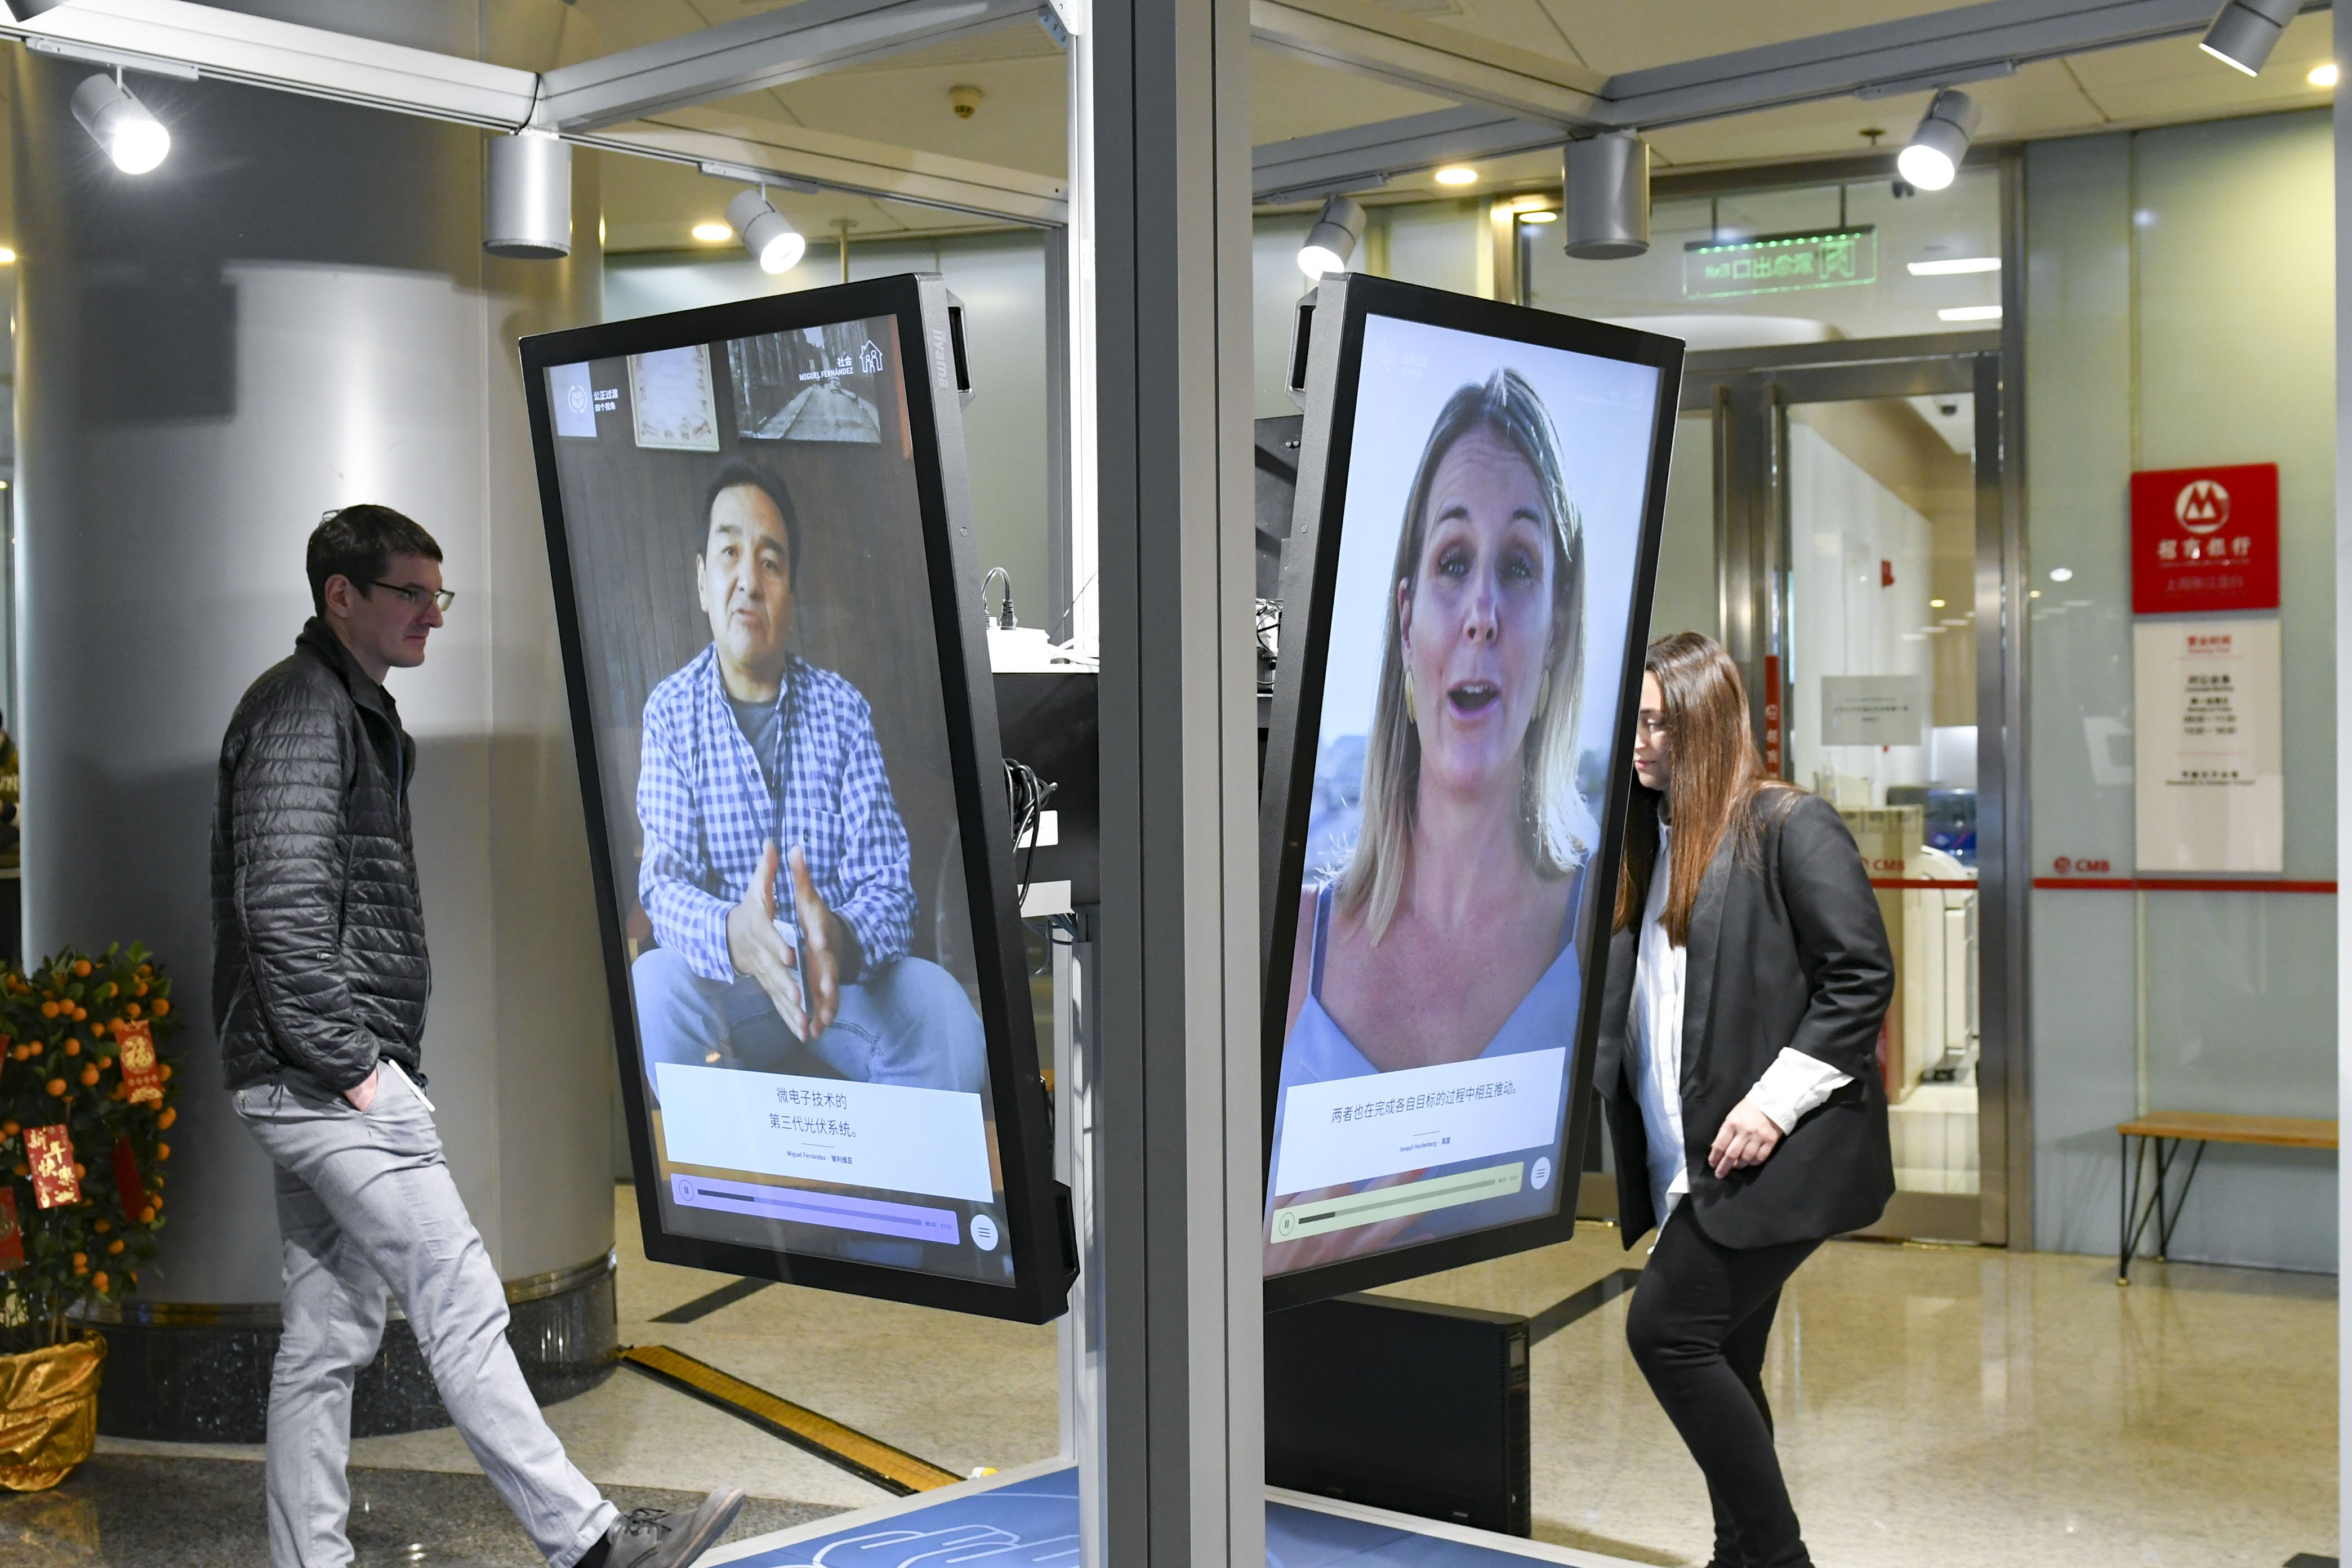 Ein Mann und eine Frau stehen an der Station "Just Transition". Im Vordergrund sind zwei Bildschirme der Station zu sehen. Auf einem Bildschirm spricht ein Mann, auf dem anderen eine Frau. Januar 2021.